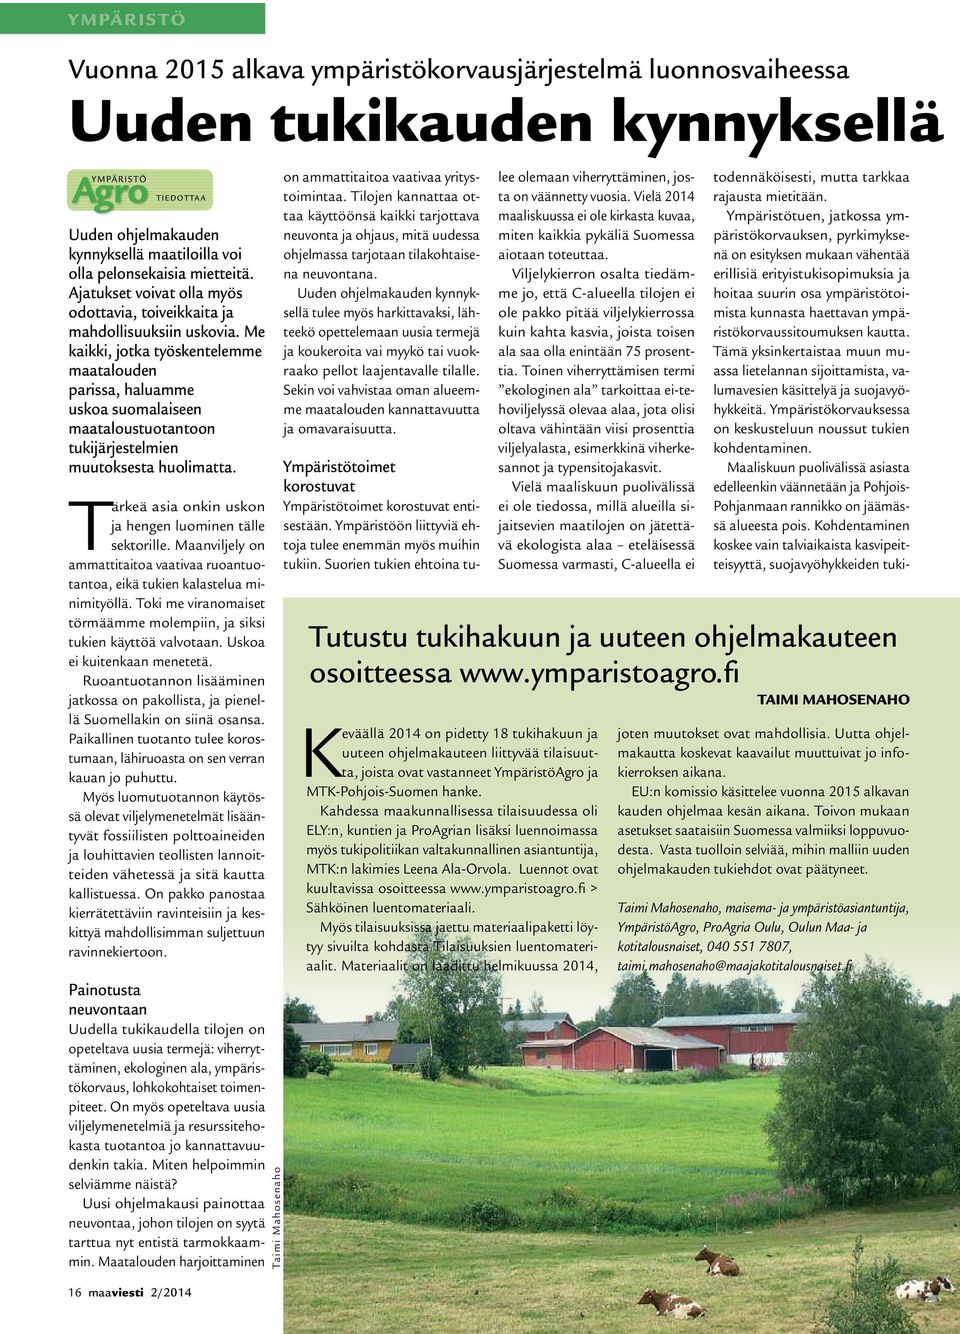 Me kaikki, jotka työskentelemme maatalouden parissa, haluamme uskoa suomalaiseen maataloustuotantoon tukijärjestelmien muutoksesta huolimatta.